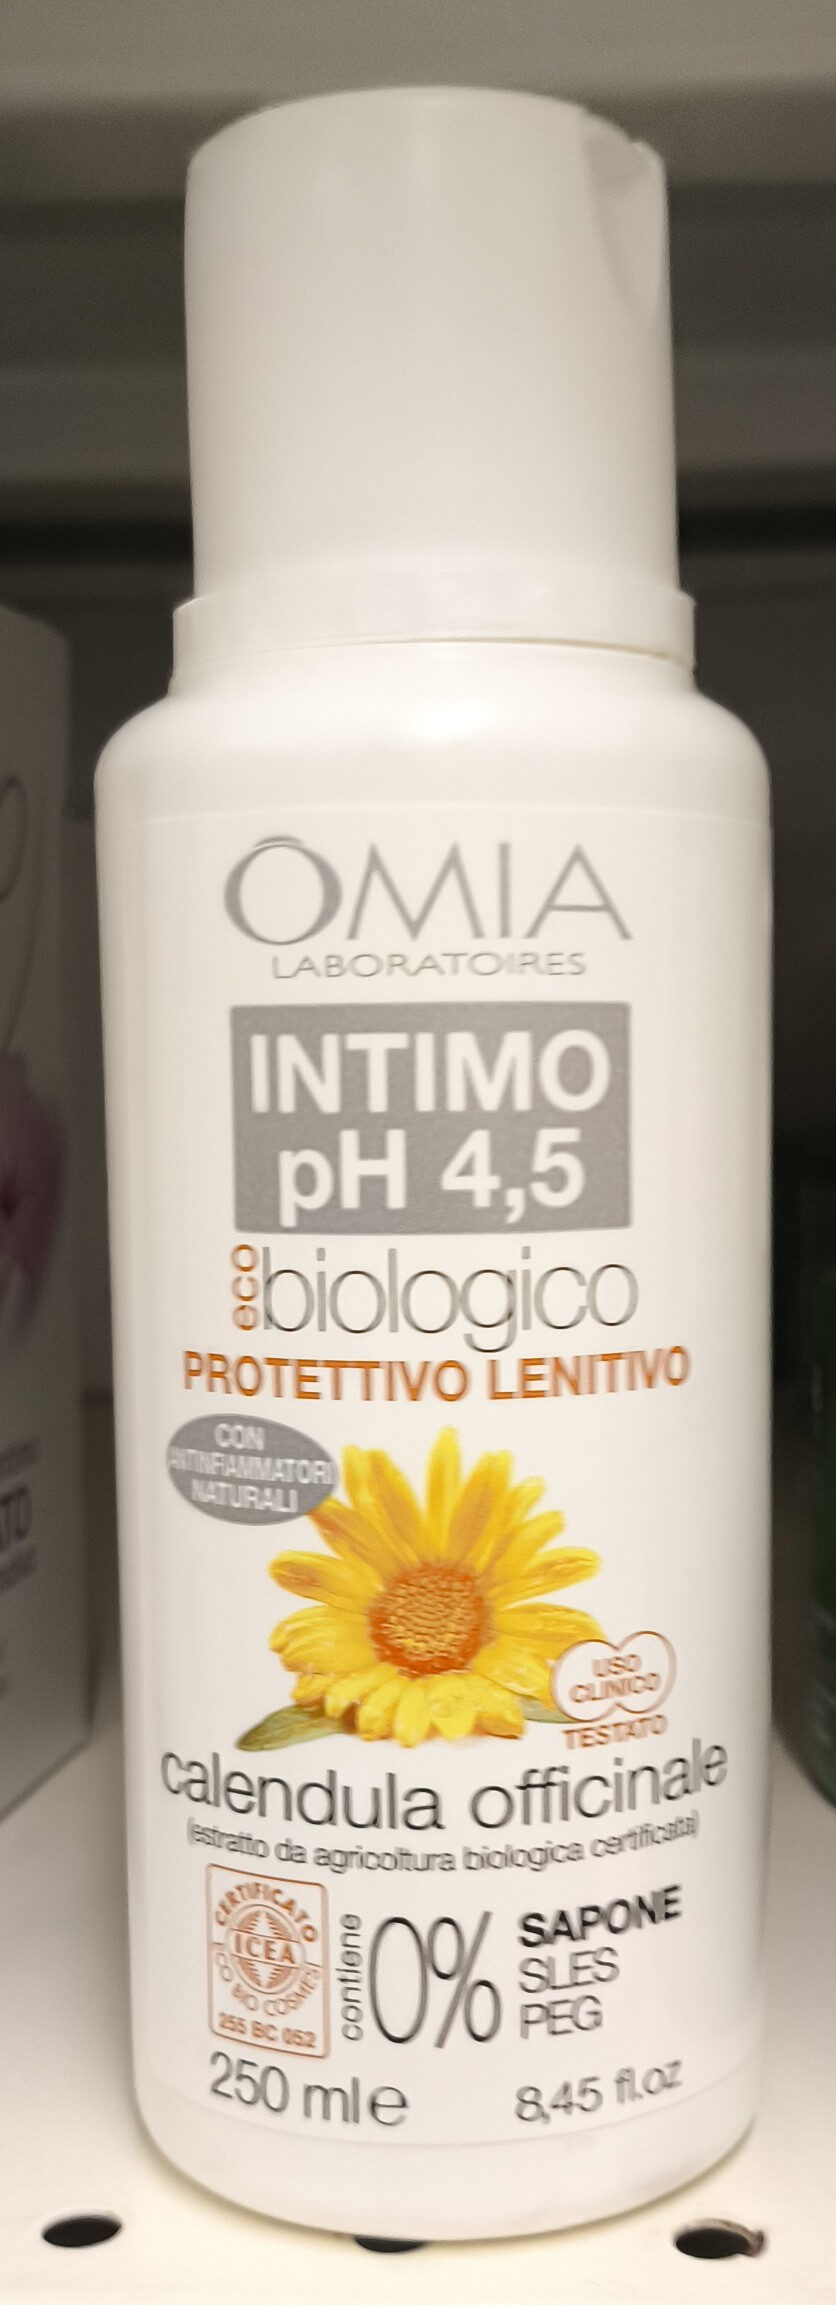 Intimo ph 4,5 - Produkto - it